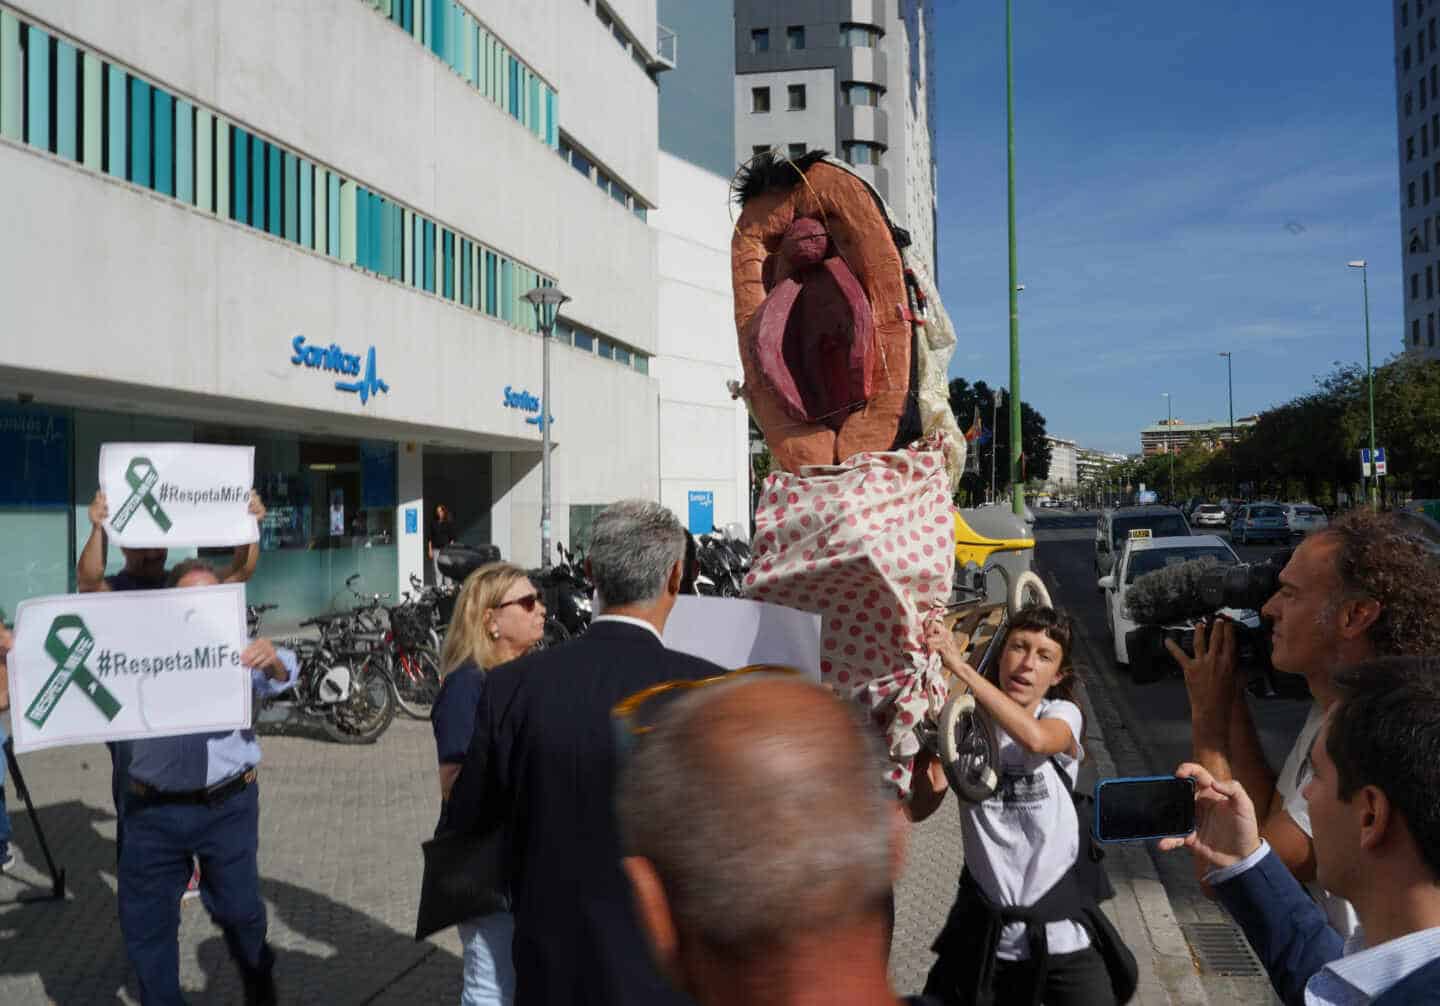 Comienza el juicio por la procesión de la vagina de plástico en Málaga